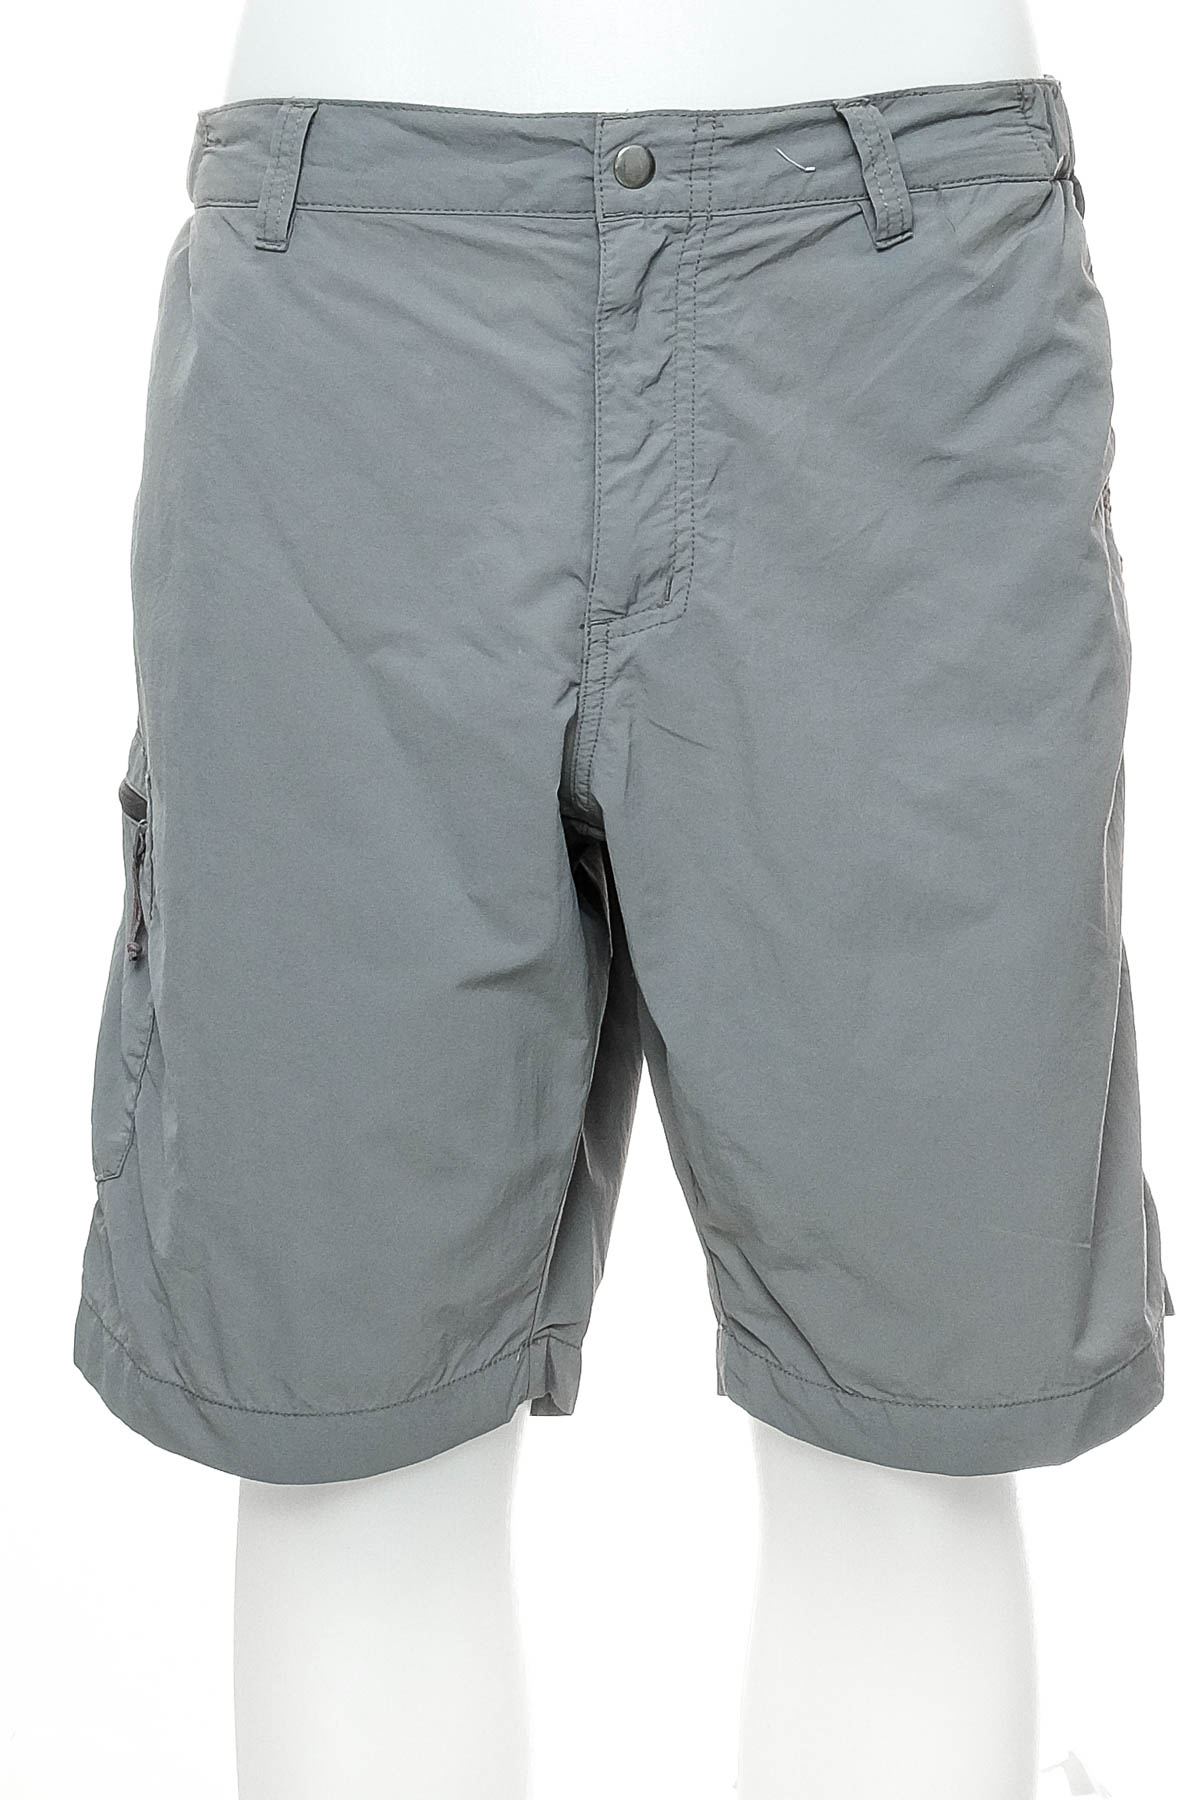 Men's shorts - Quechua - 0